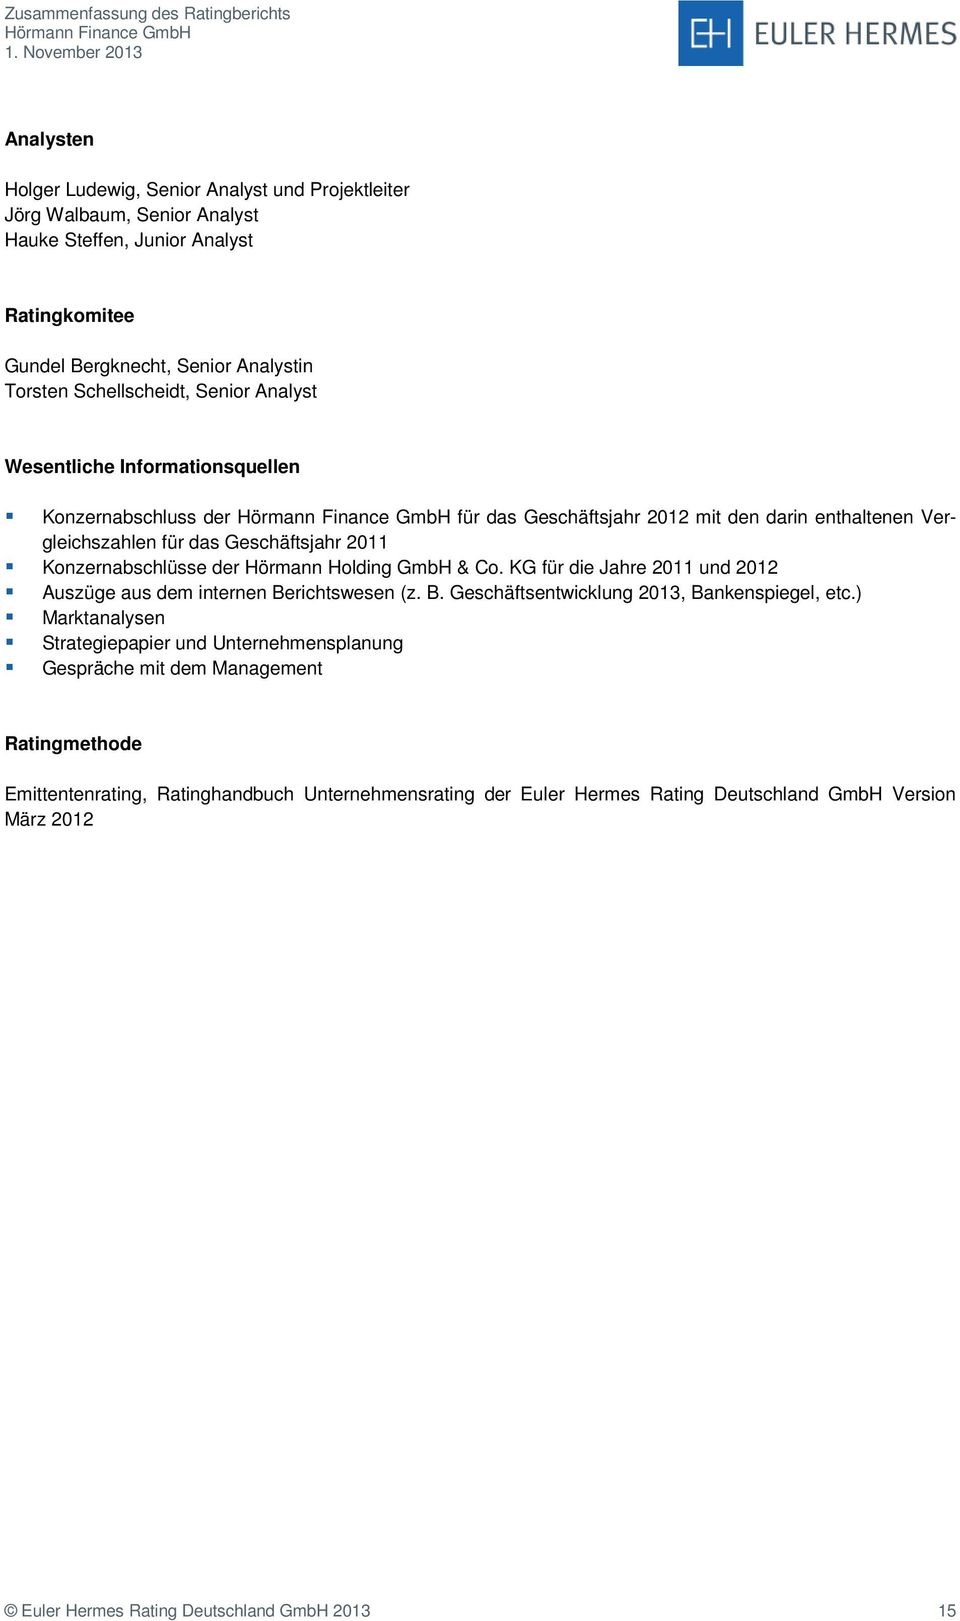 Holding GmbH & Co. KG für die Jahre 2011 und 2012 Auszüge aus dem internen Berichtswesen (z. B. Geschäftsentwicklung 2013, Bankenspiegel, etc.